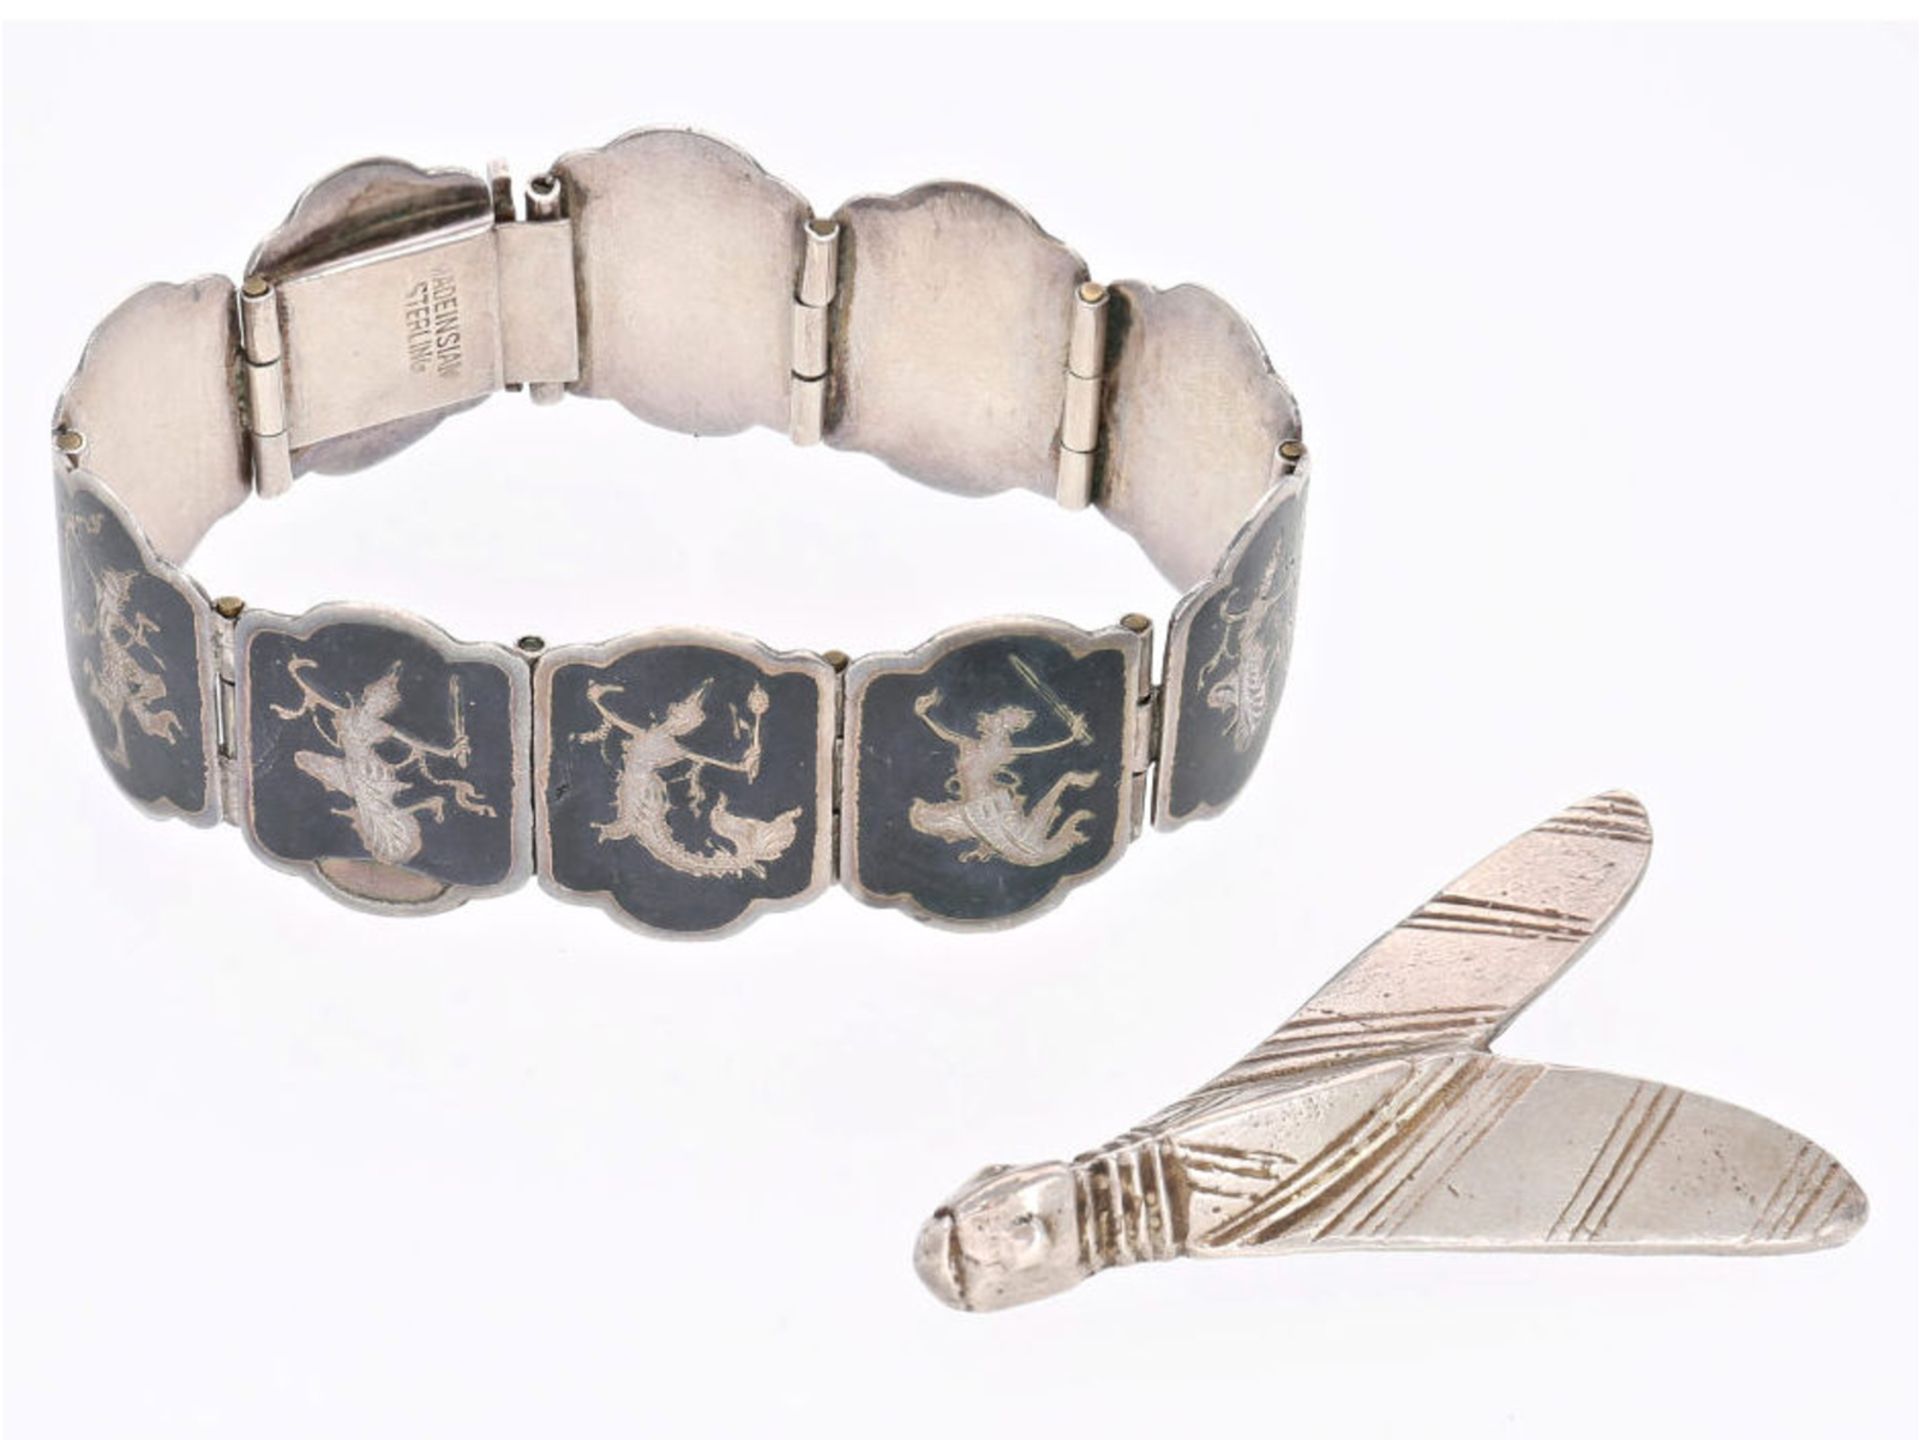 Armband/Brosche: seltene Art déco Brosche Motiv "Nachtfalter" sowie ein altes asiatisches Silber-Arm